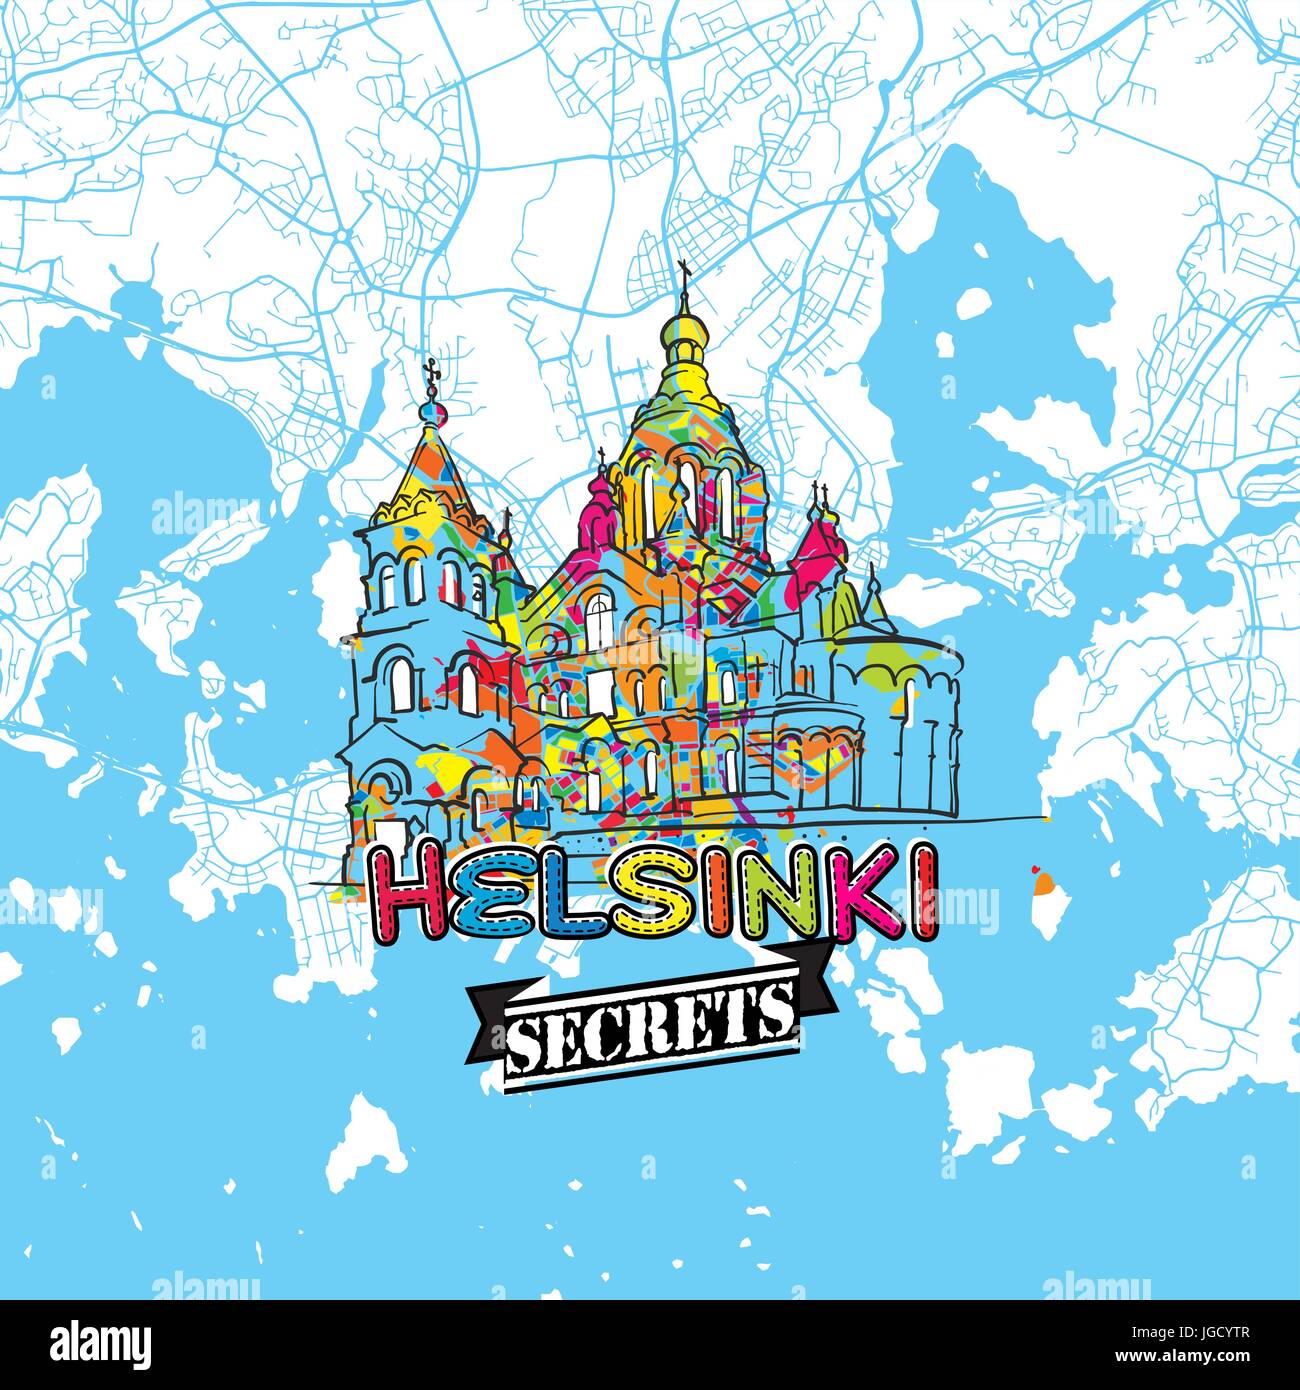 Helsinki Reise Geheimnisse Art Map für die Zuordnung von Experten und Reiseführer. Handgemachte Stadt Logo, Typo-Abzeichen und Hand gezeichnete Vektor-Bild an der Spitze sind gruppiert eine Stock Vektor